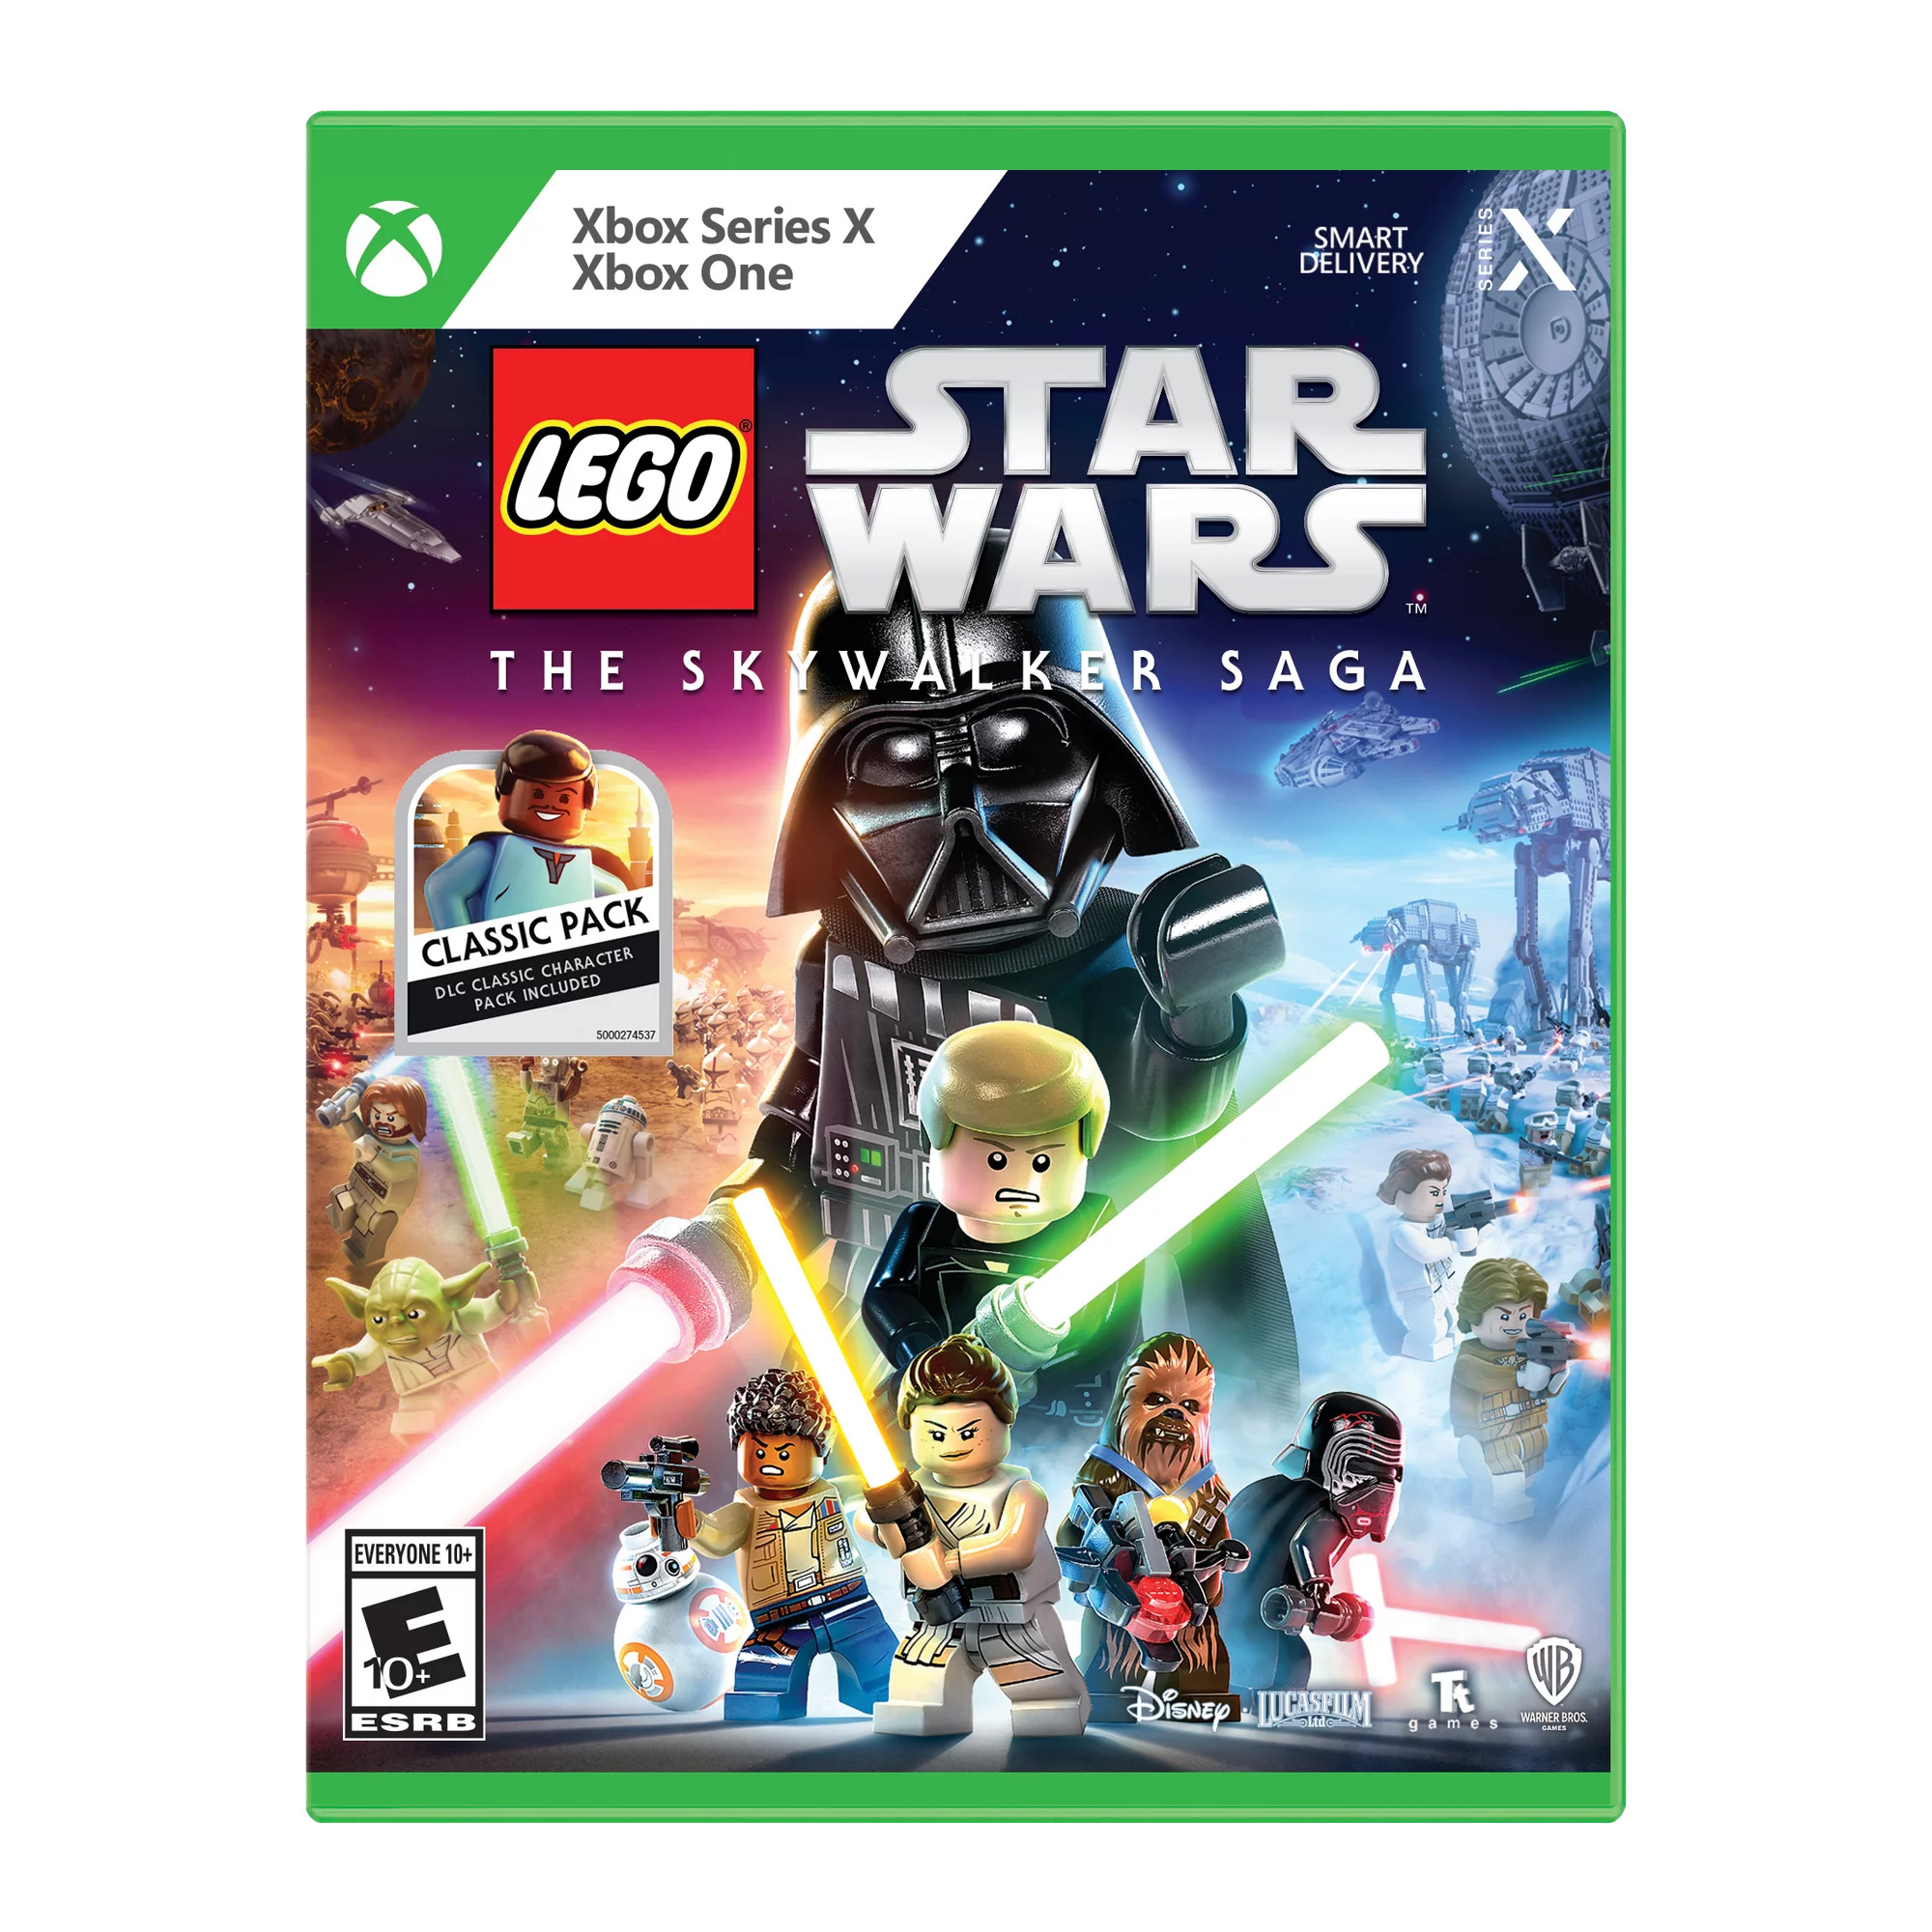 LEGO Star Wars: The Skywalker Saga - Xbox One - $10 Walmart.com YMMV